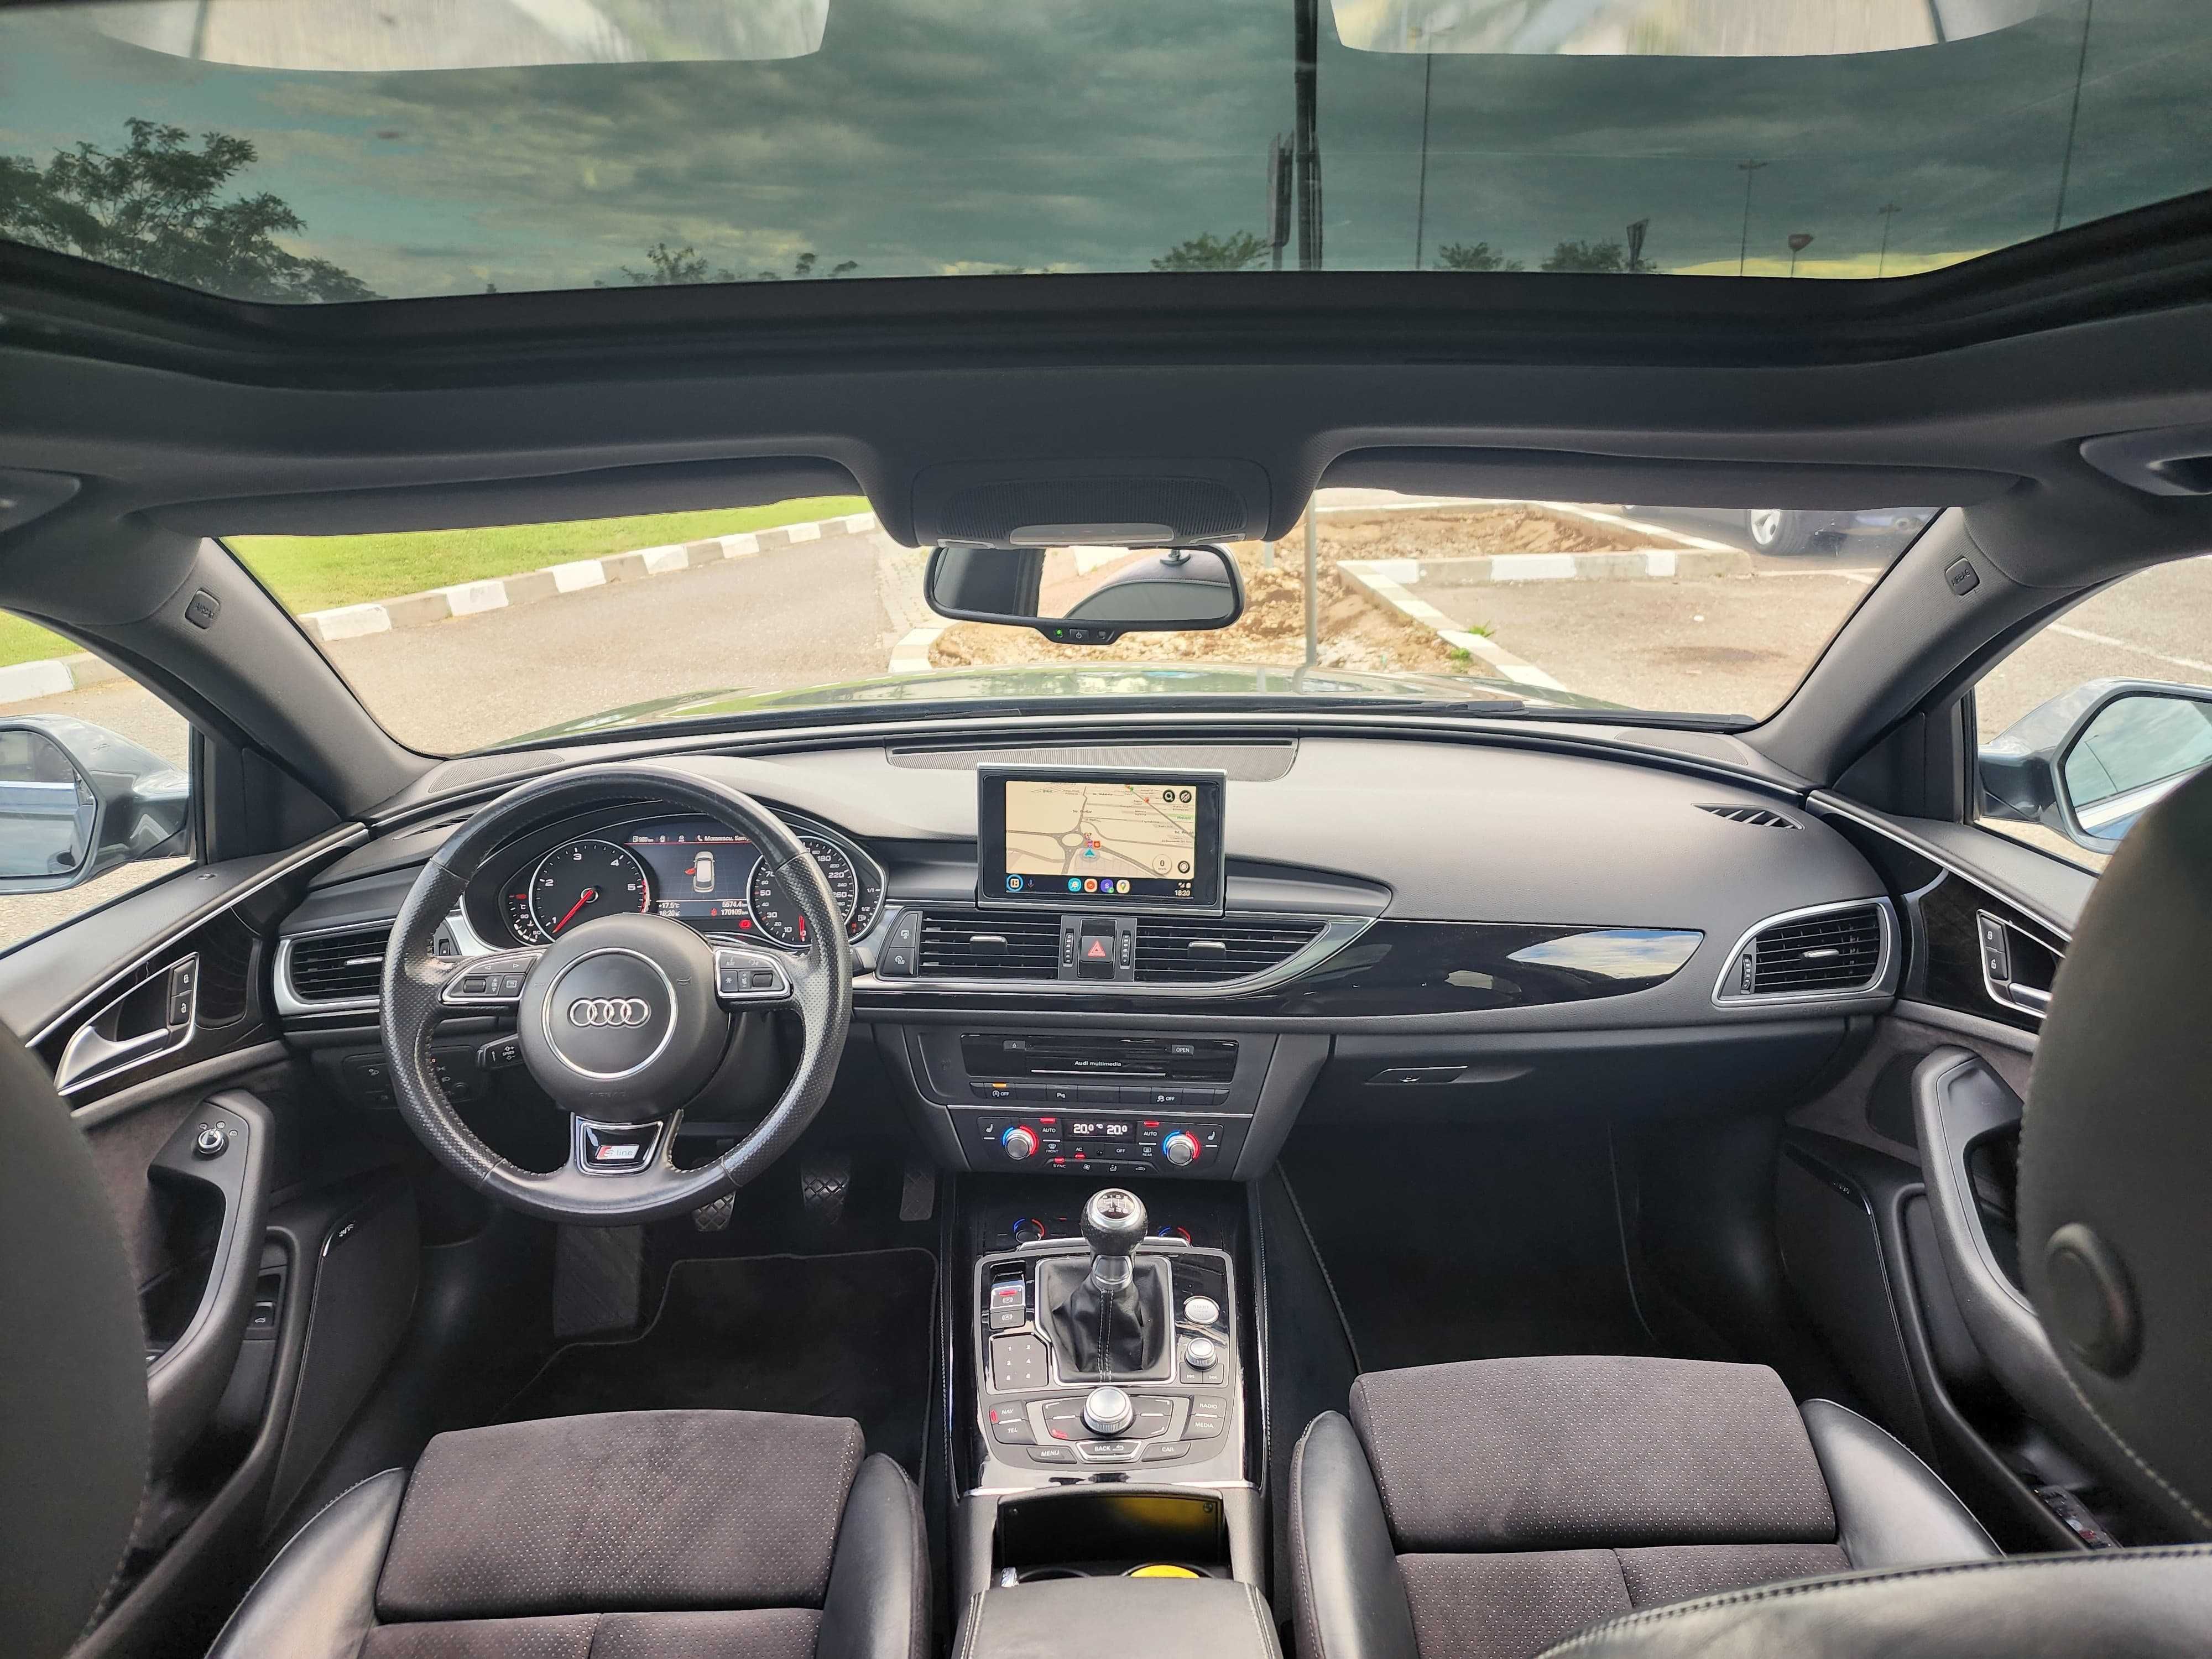 Audi A6 C7 Avant 3.0 TDI S-line Panoramic Bose Manual